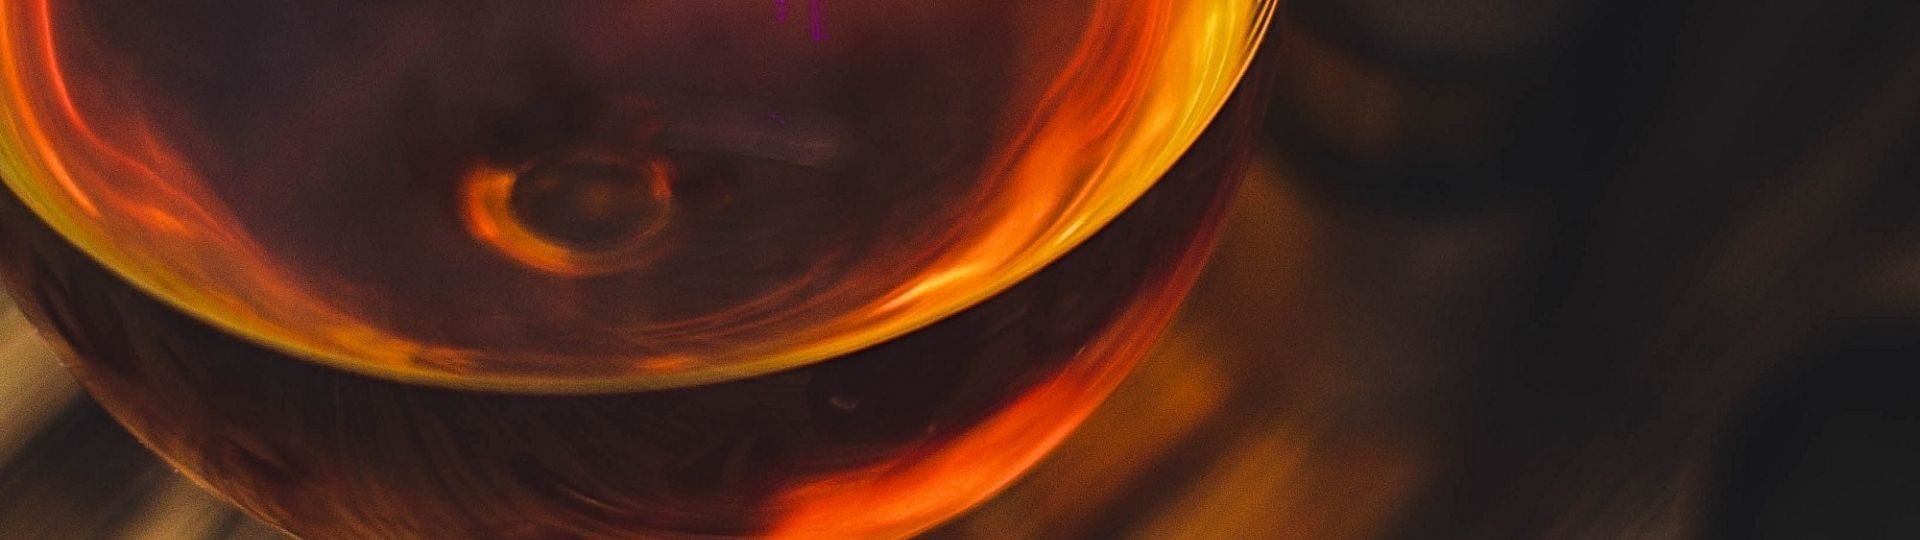 brandy in a glass | Liquori e distillati senza glutine | foto nika benedictova unsplash